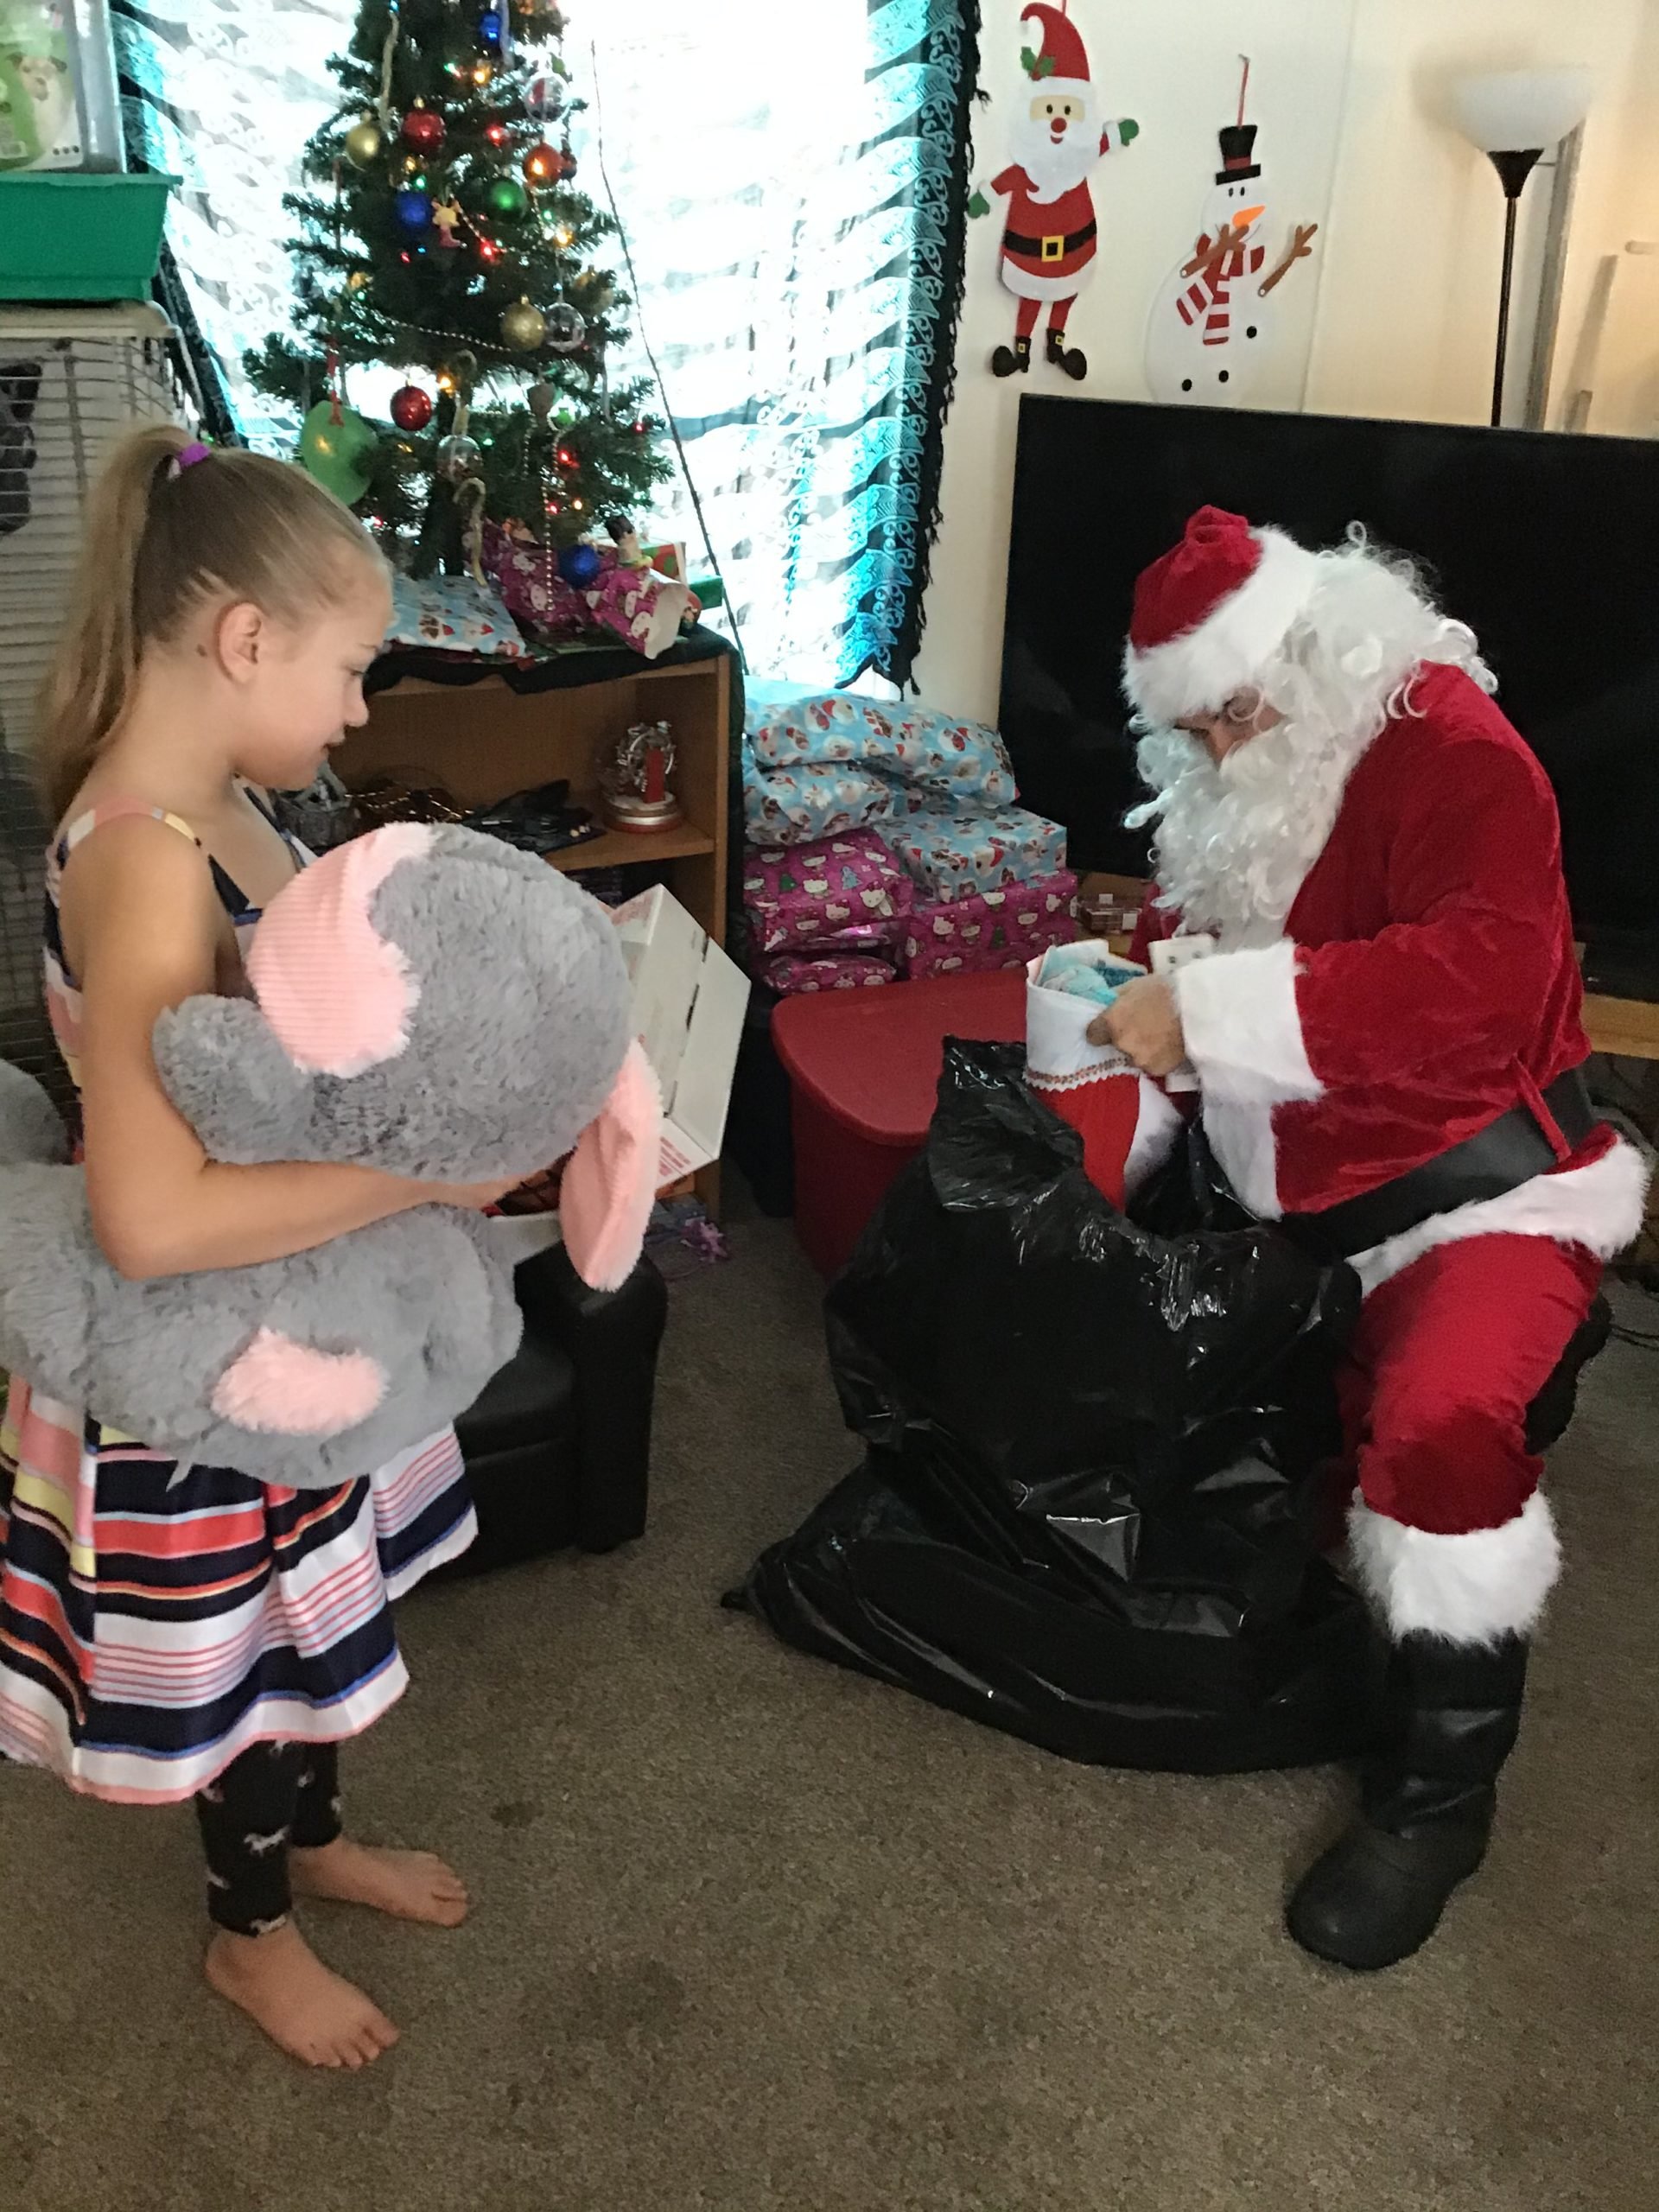 American Legion Post 143 Helps Santa Deliver Christmas Joy